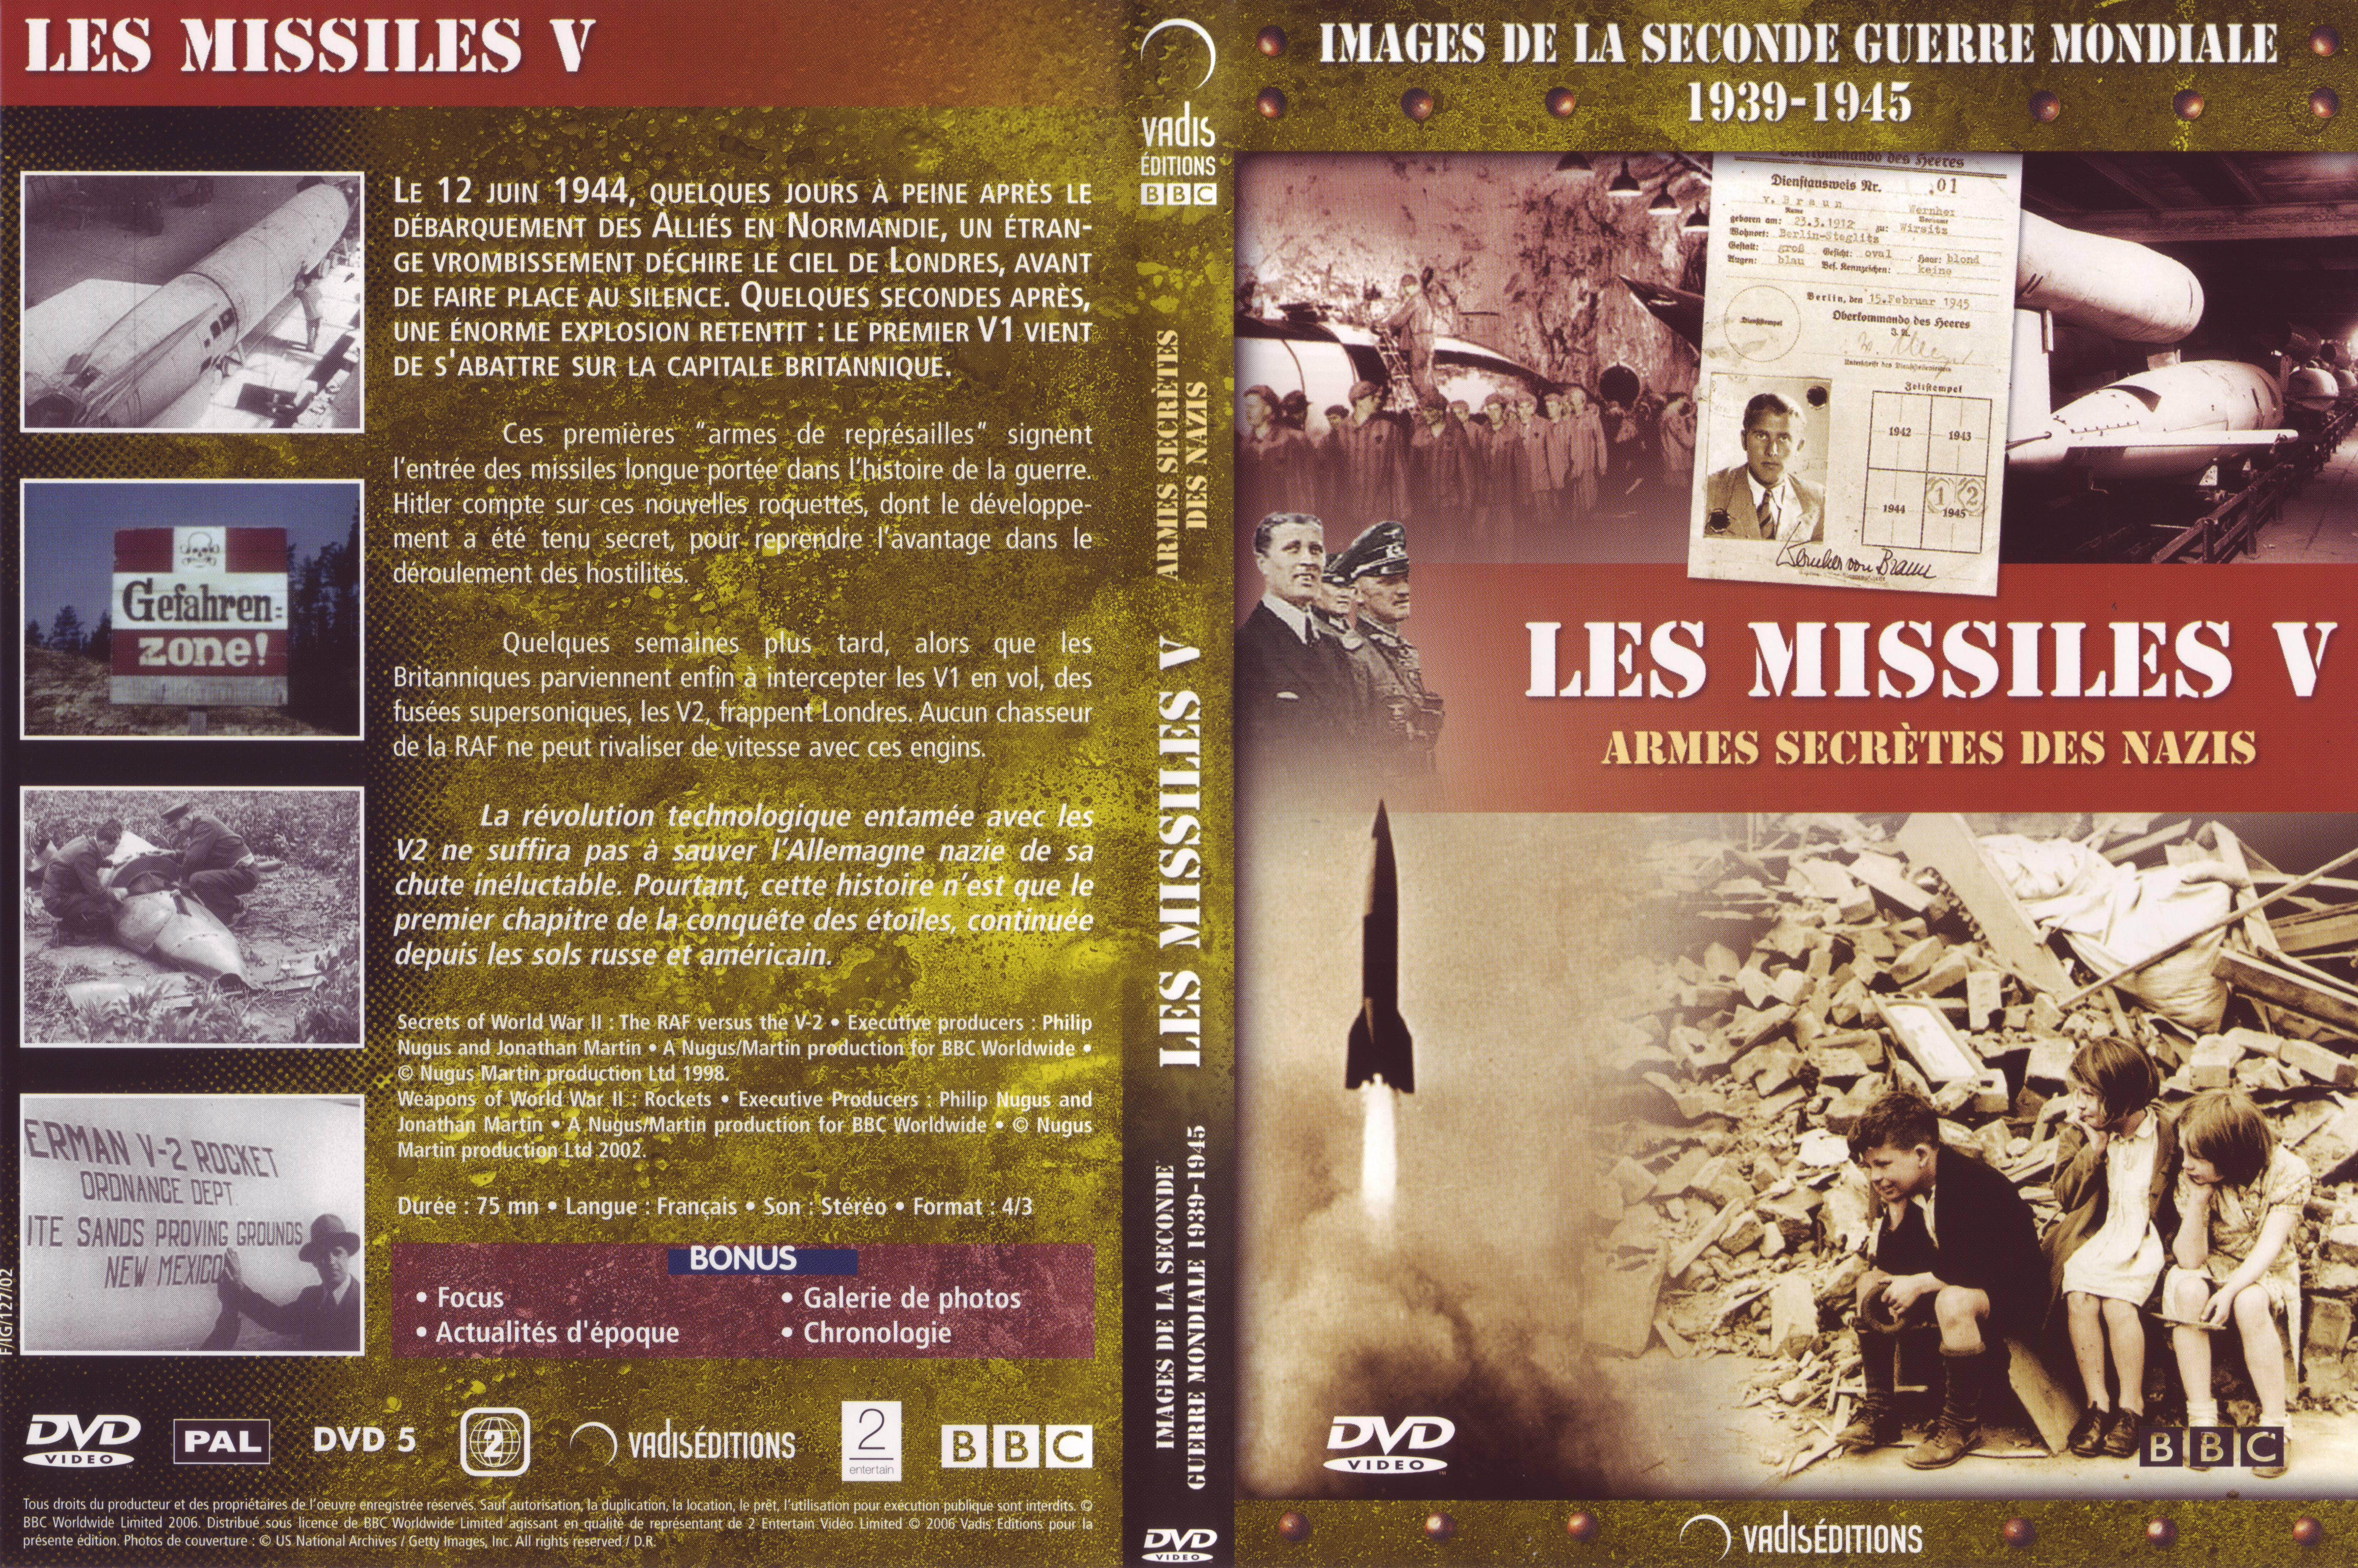 Jaquette DVD Images de la seconde guerre mondiale - Les missiles V